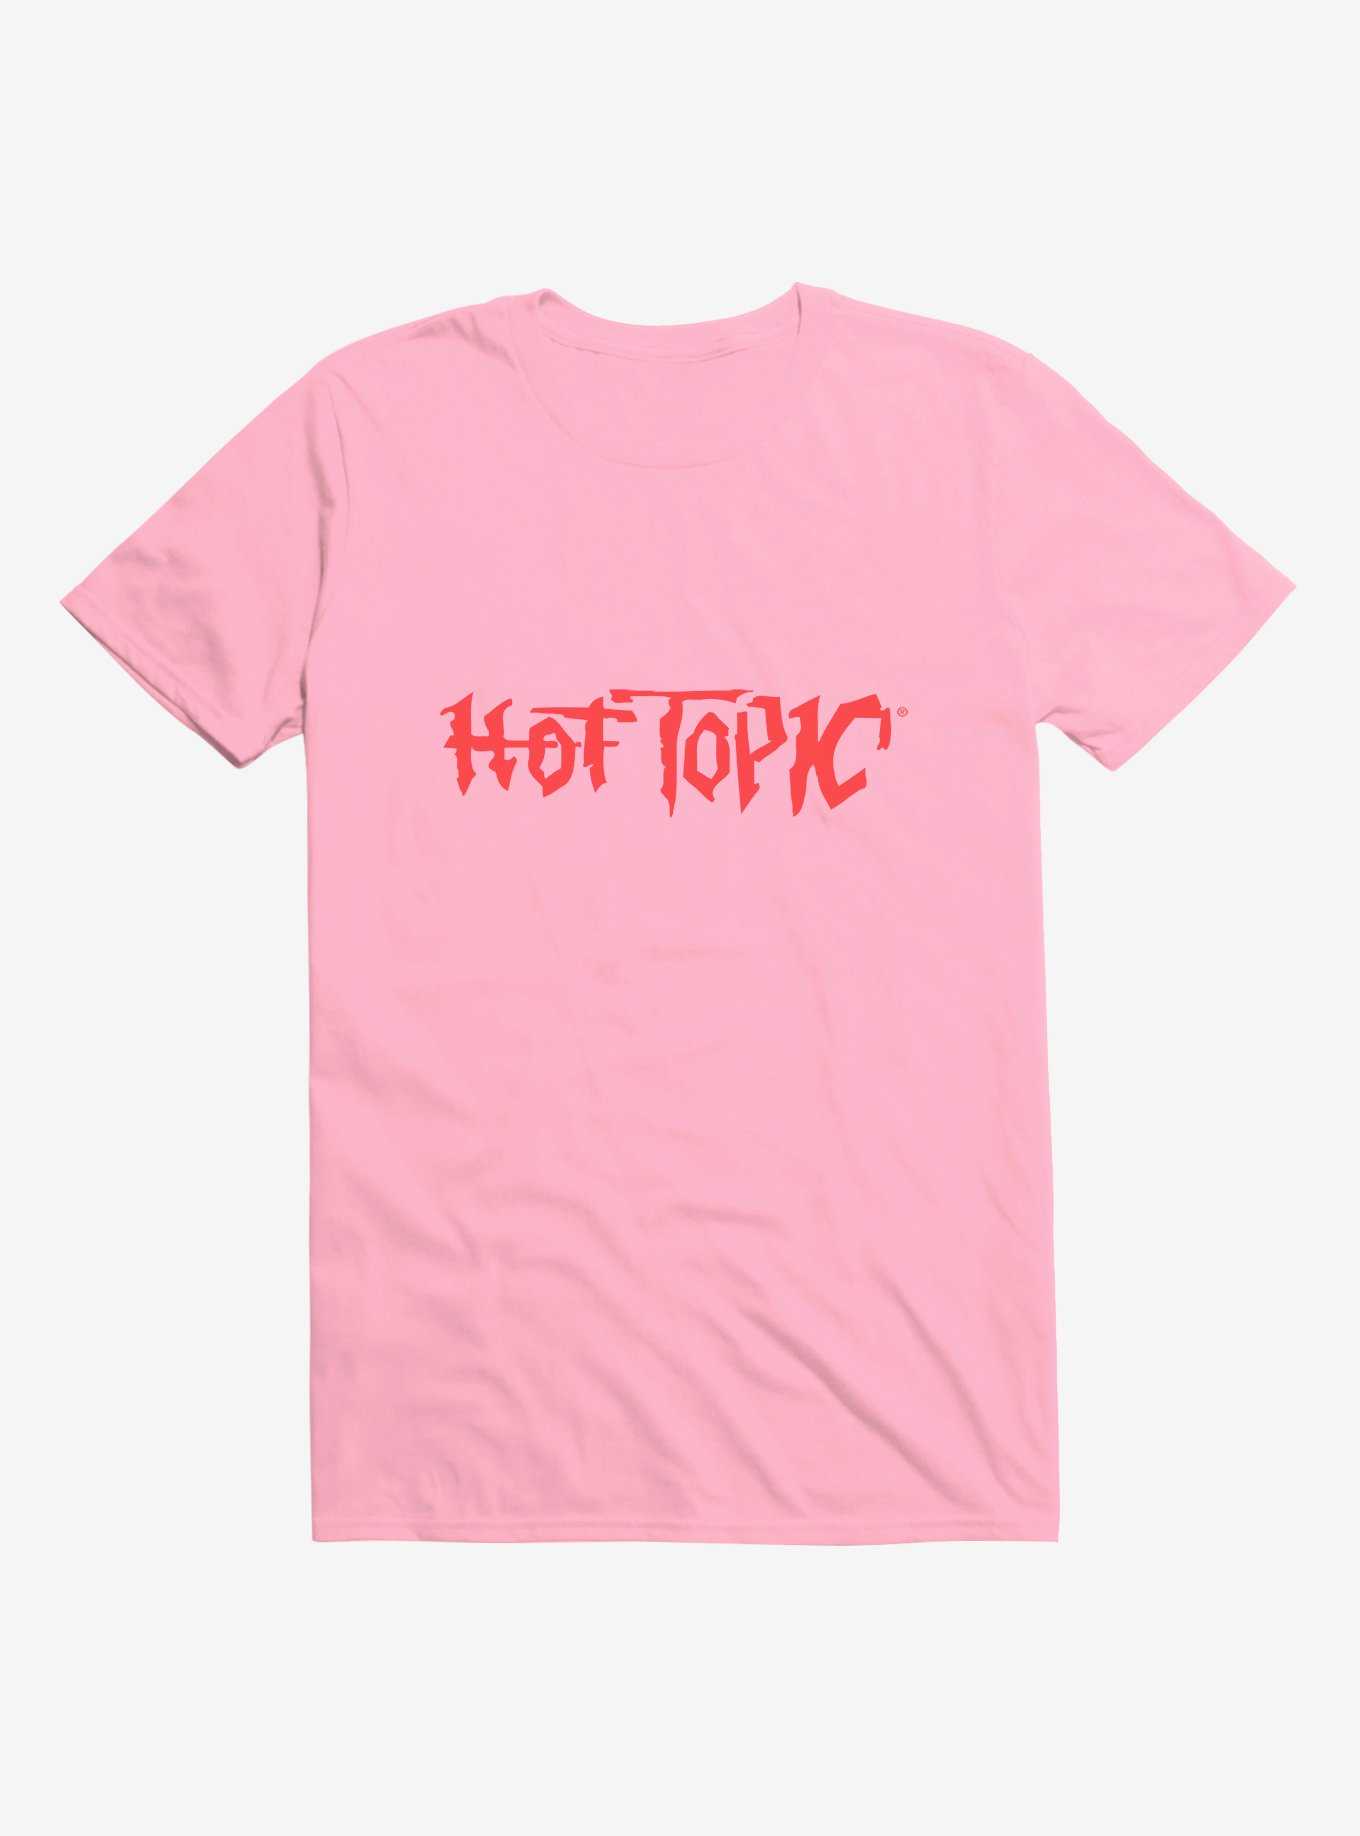 Retro Hot Topic Logo T-Shirt, , hi-res